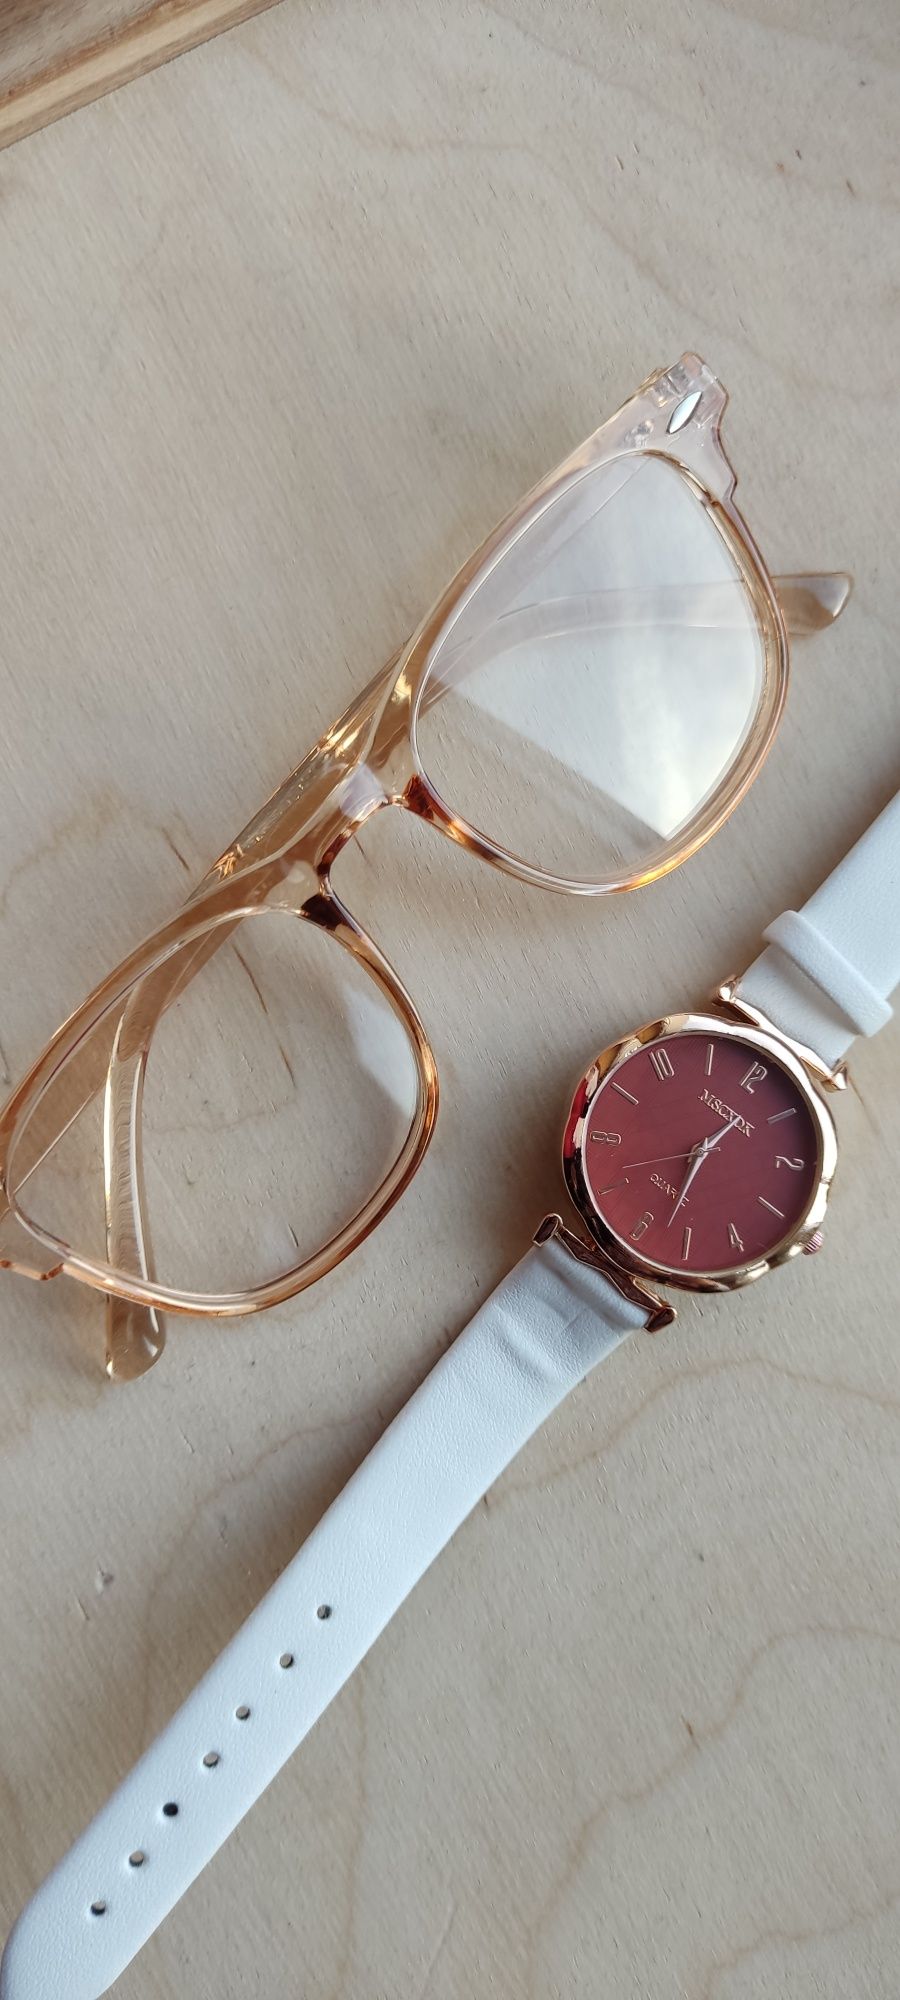 Nowy zestaw biały zegarek i okulary